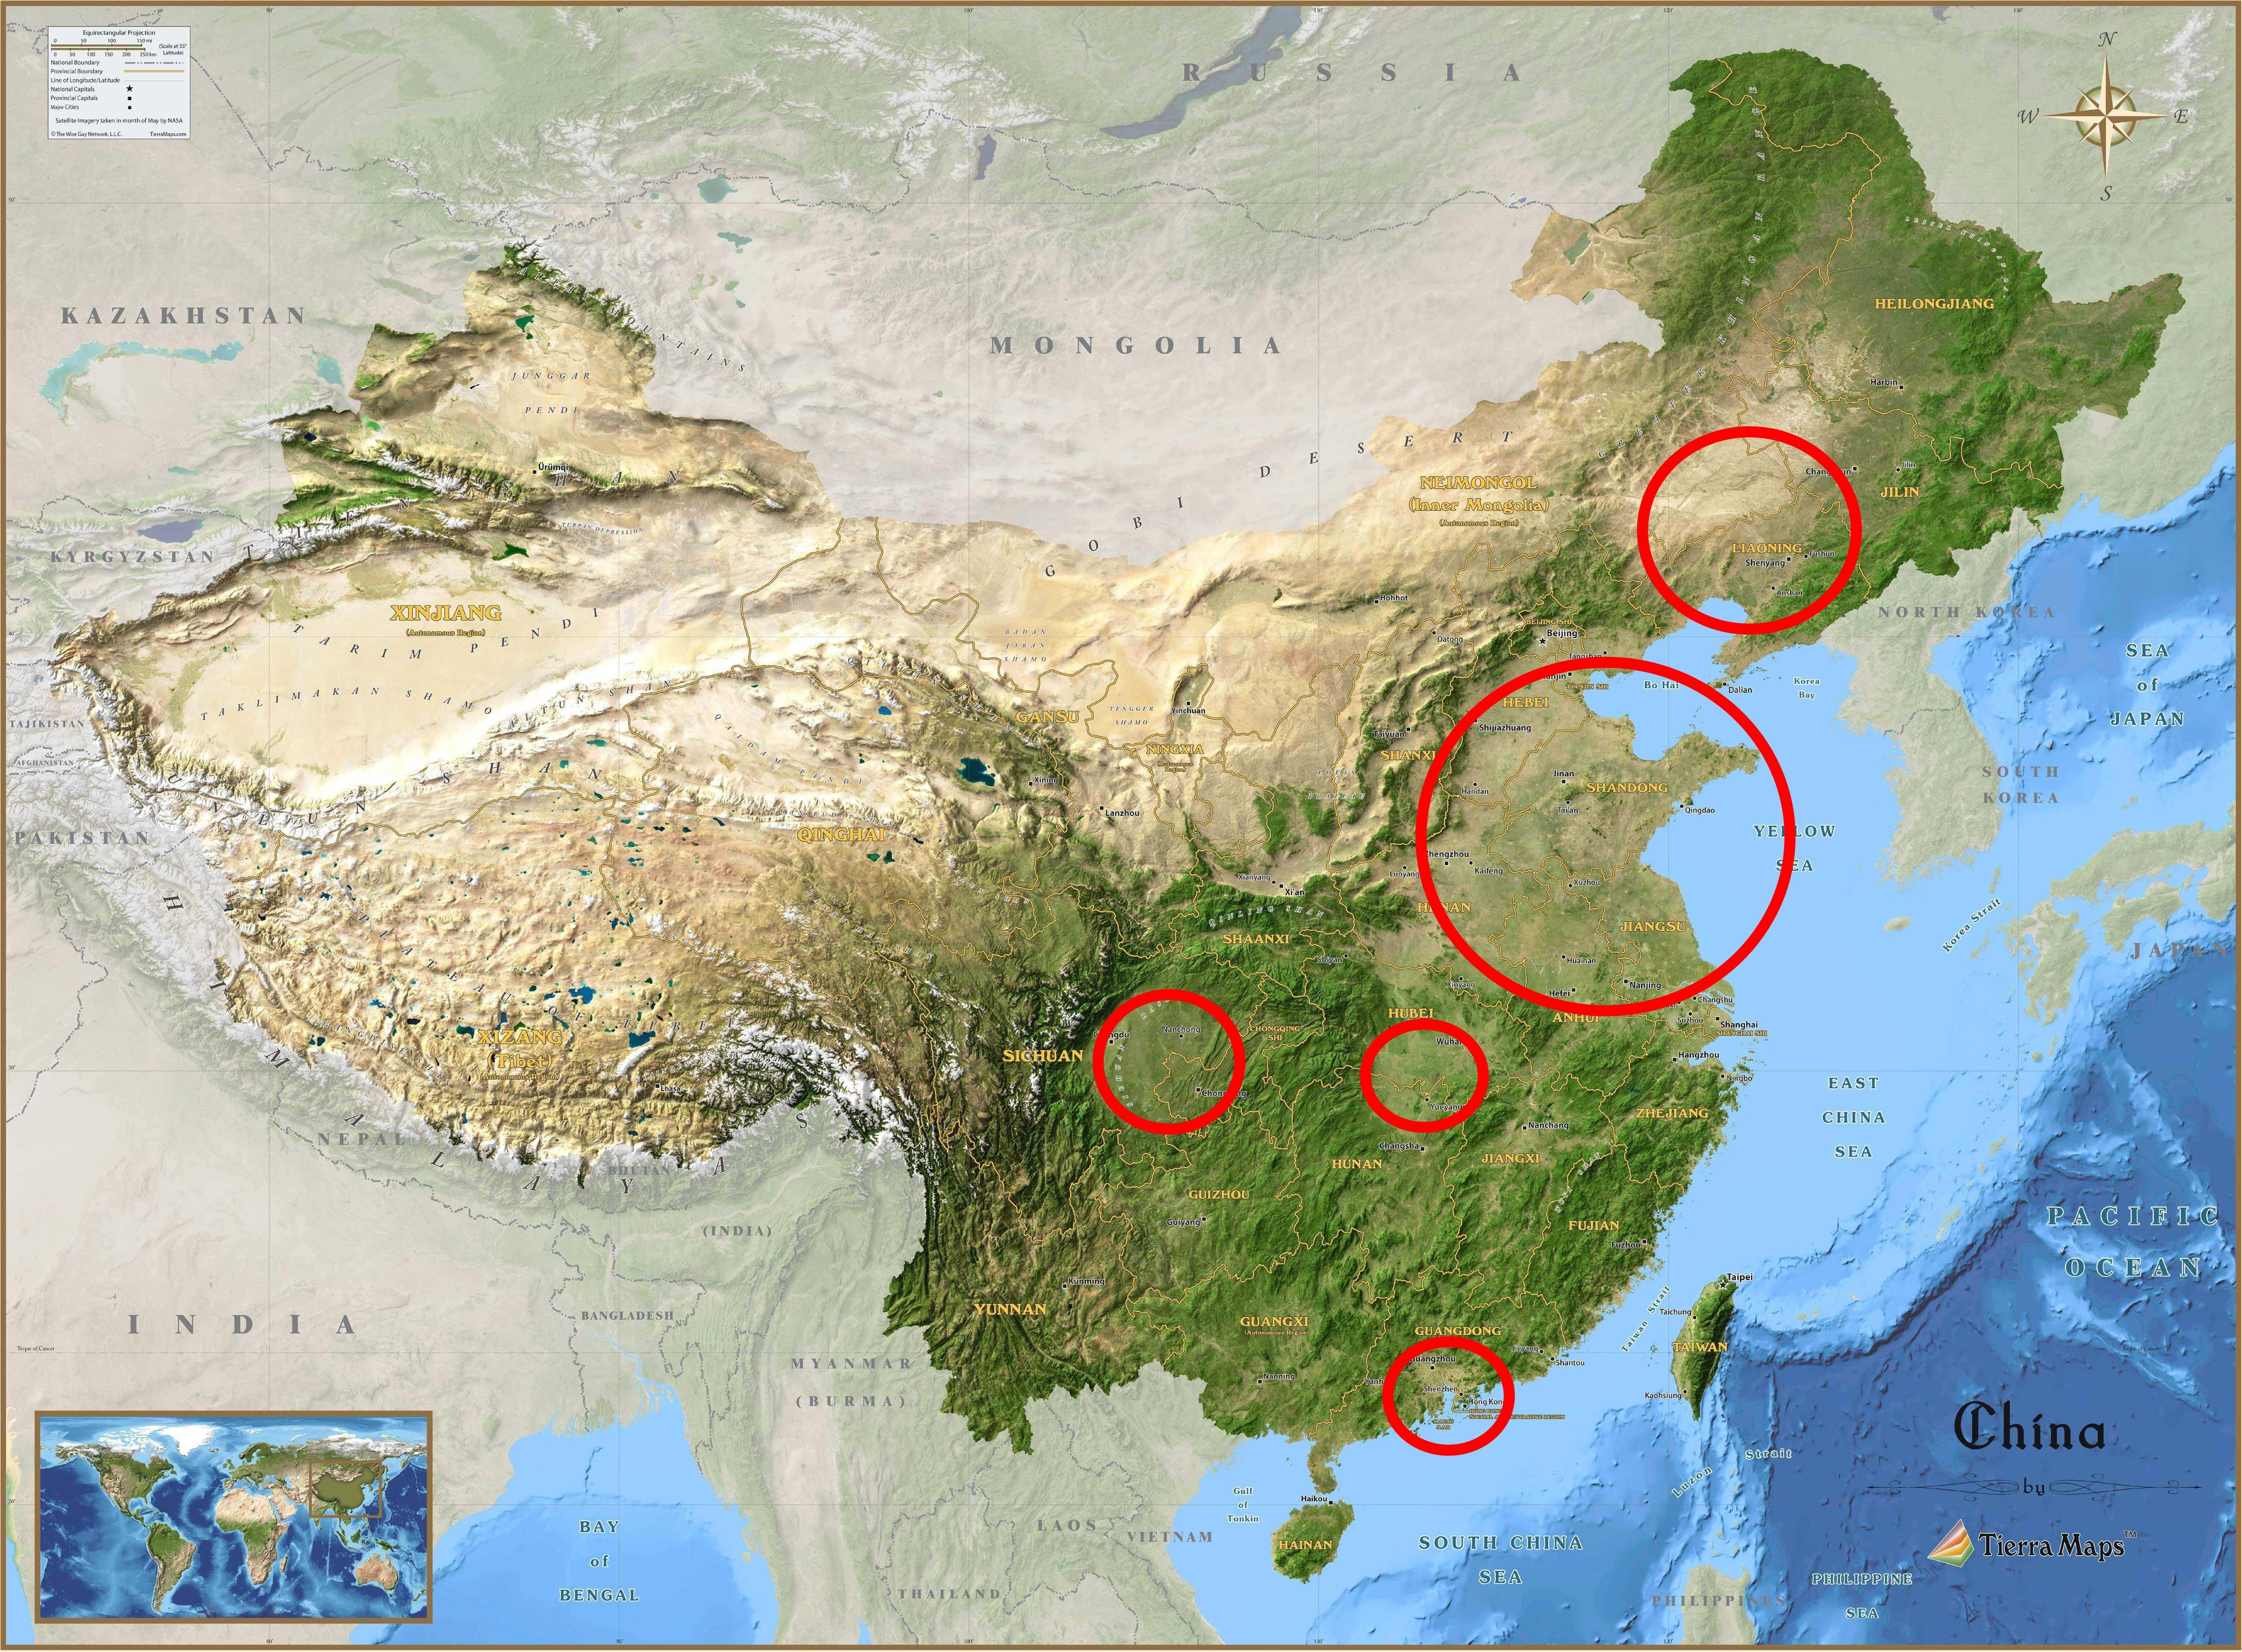 ②从胡焕庸线来说,郑州属中心,在建国初期的时候,南北相对均衡,郑州也